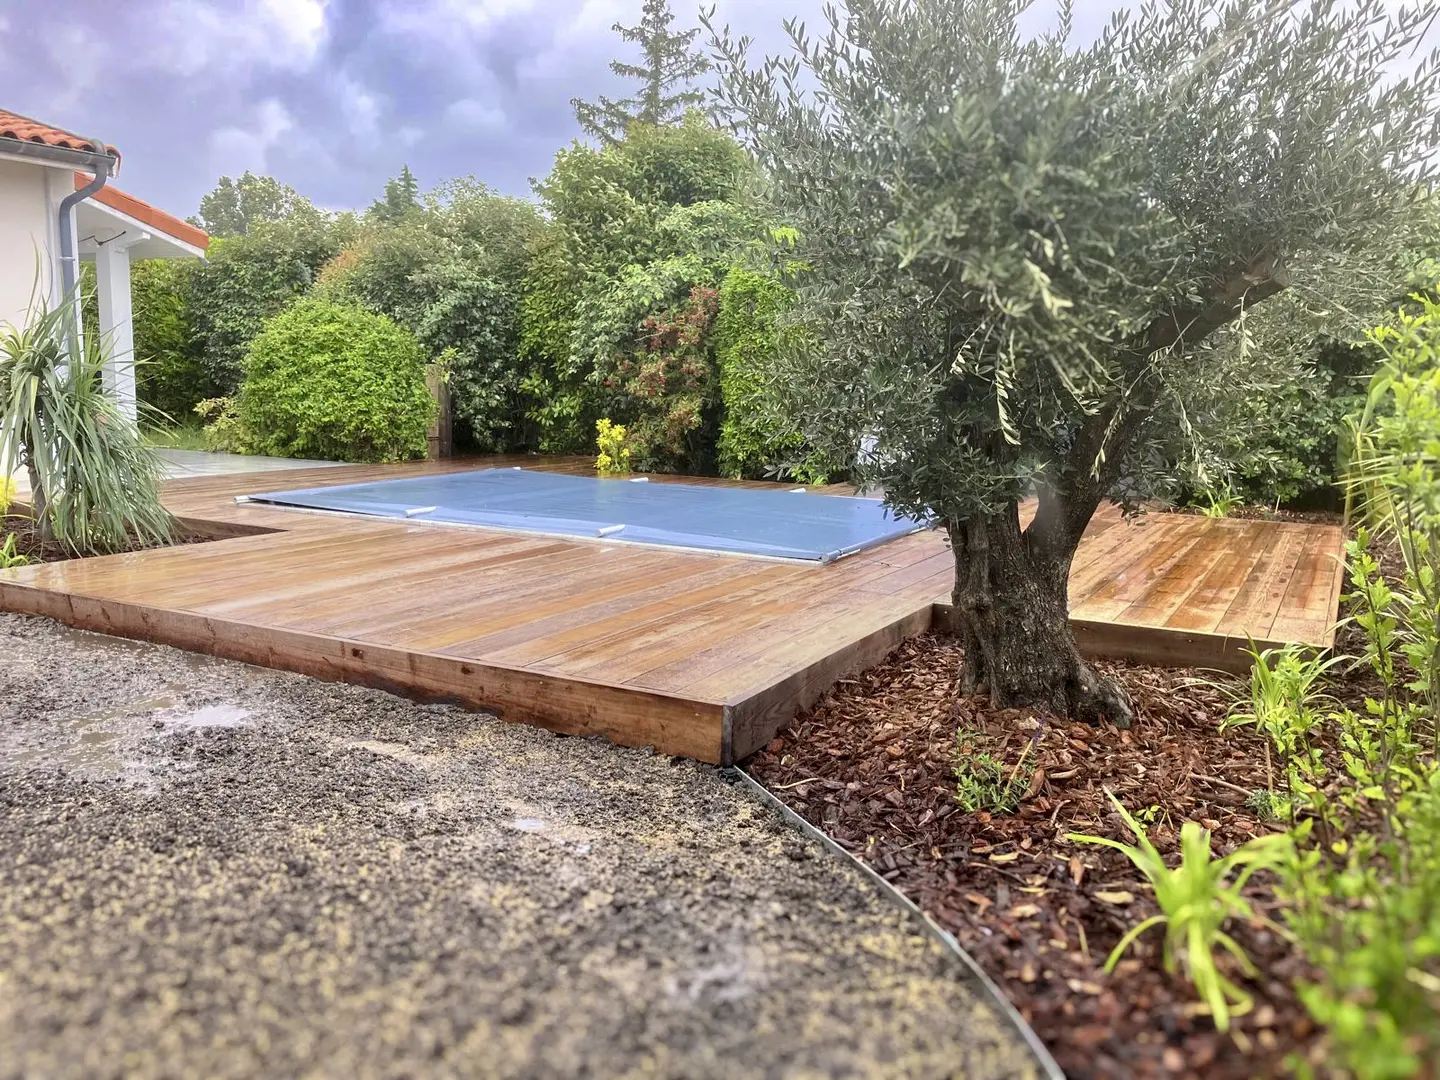 Photo du jardin après réalisation avec un autre point de vue. On peut voir en premier plan un olivier disposé dans un massif et derrière la terrasse en bois et la piscine